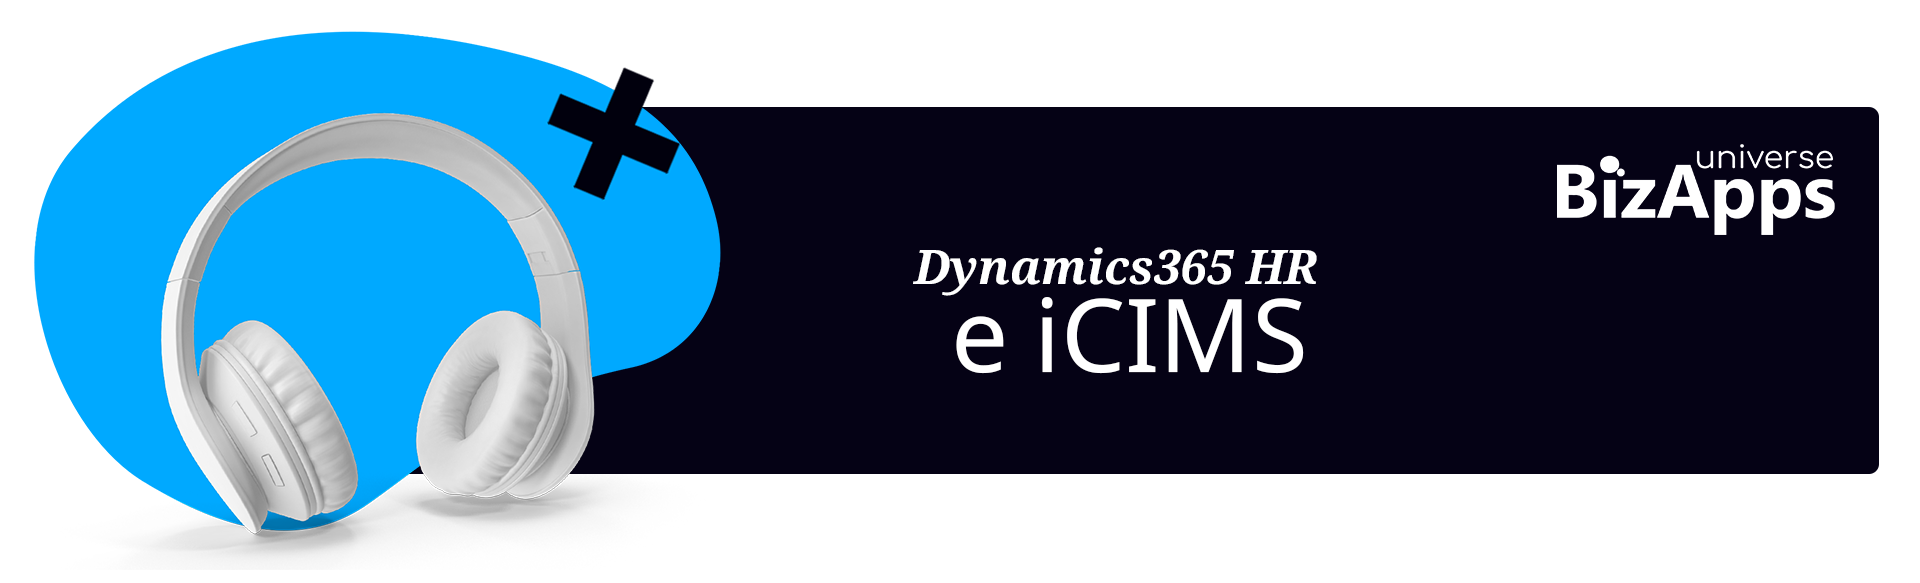 Capítulo X Dynamics365 HR e iCIMS Axazure